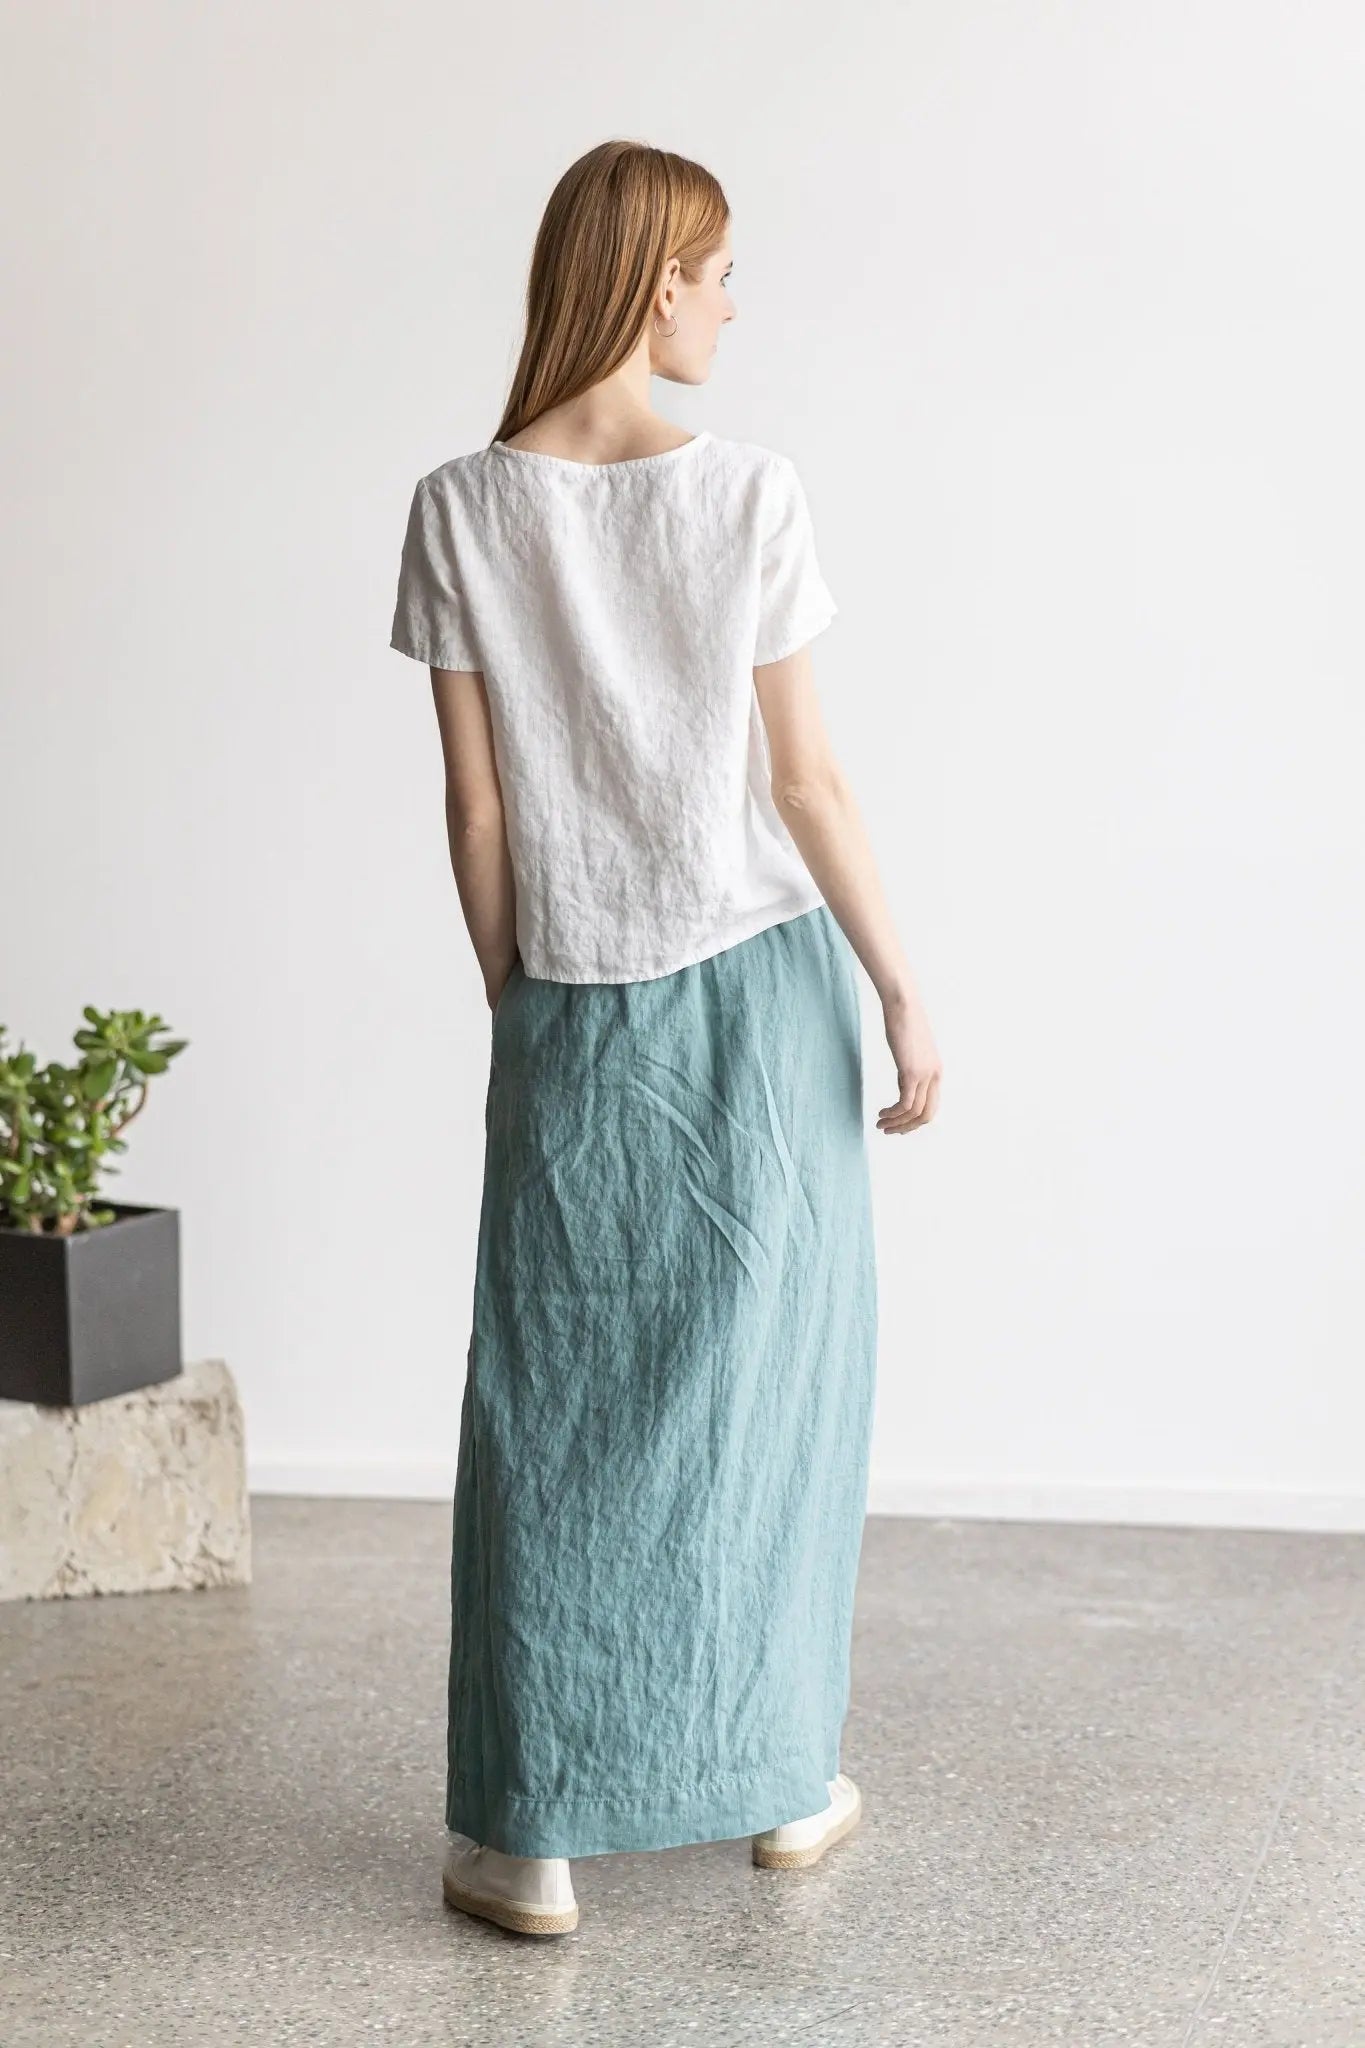 Maxi Linen Skirt - Epic Linen luxury linen